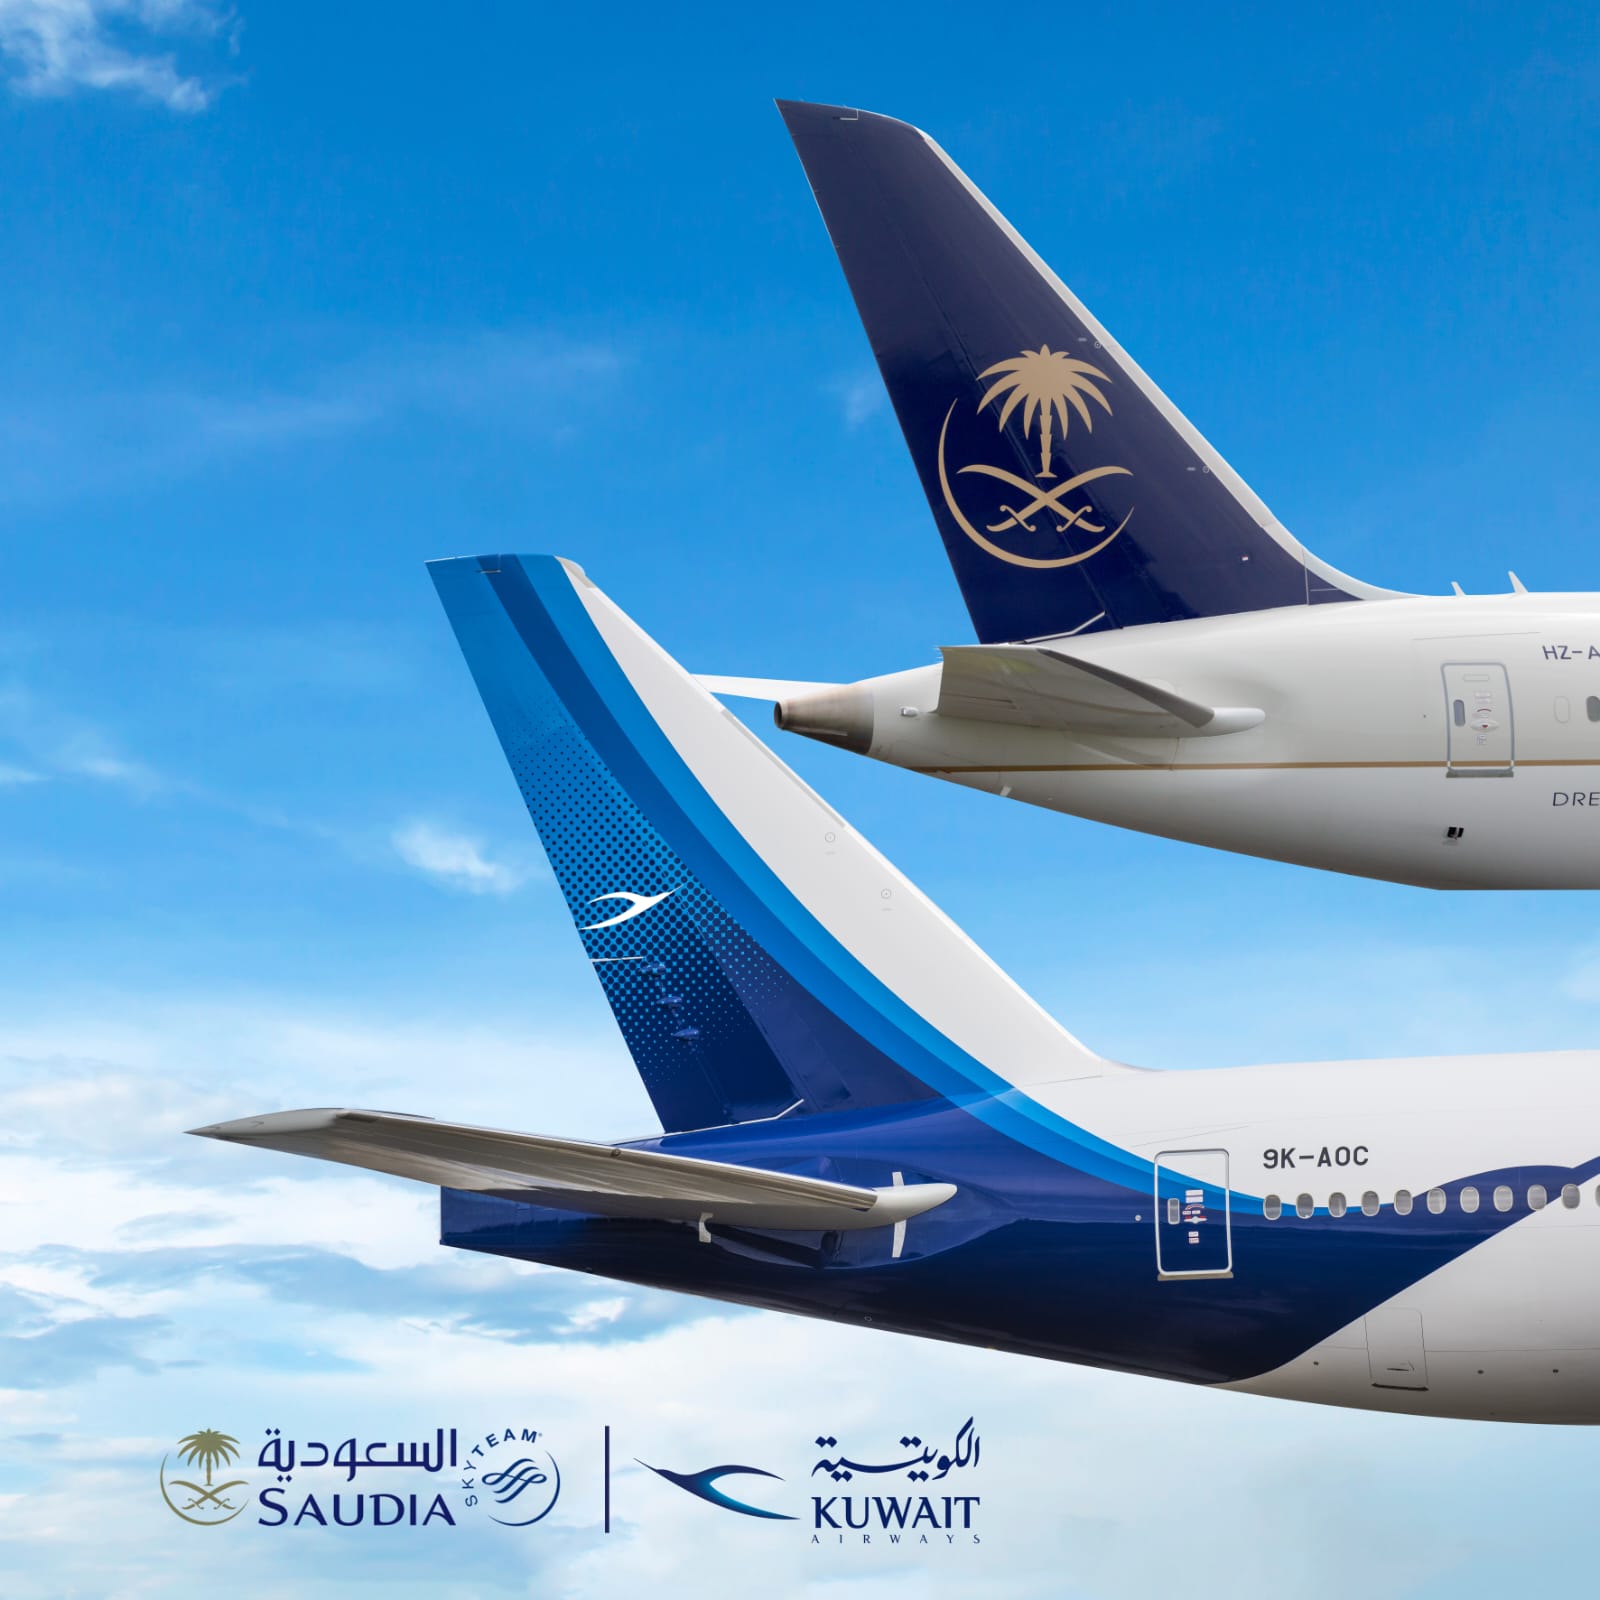 اتفاقية الرمز المشترك والتعاون بين الخطوط الجوية الكويتية والخطوط الجوية السعودية